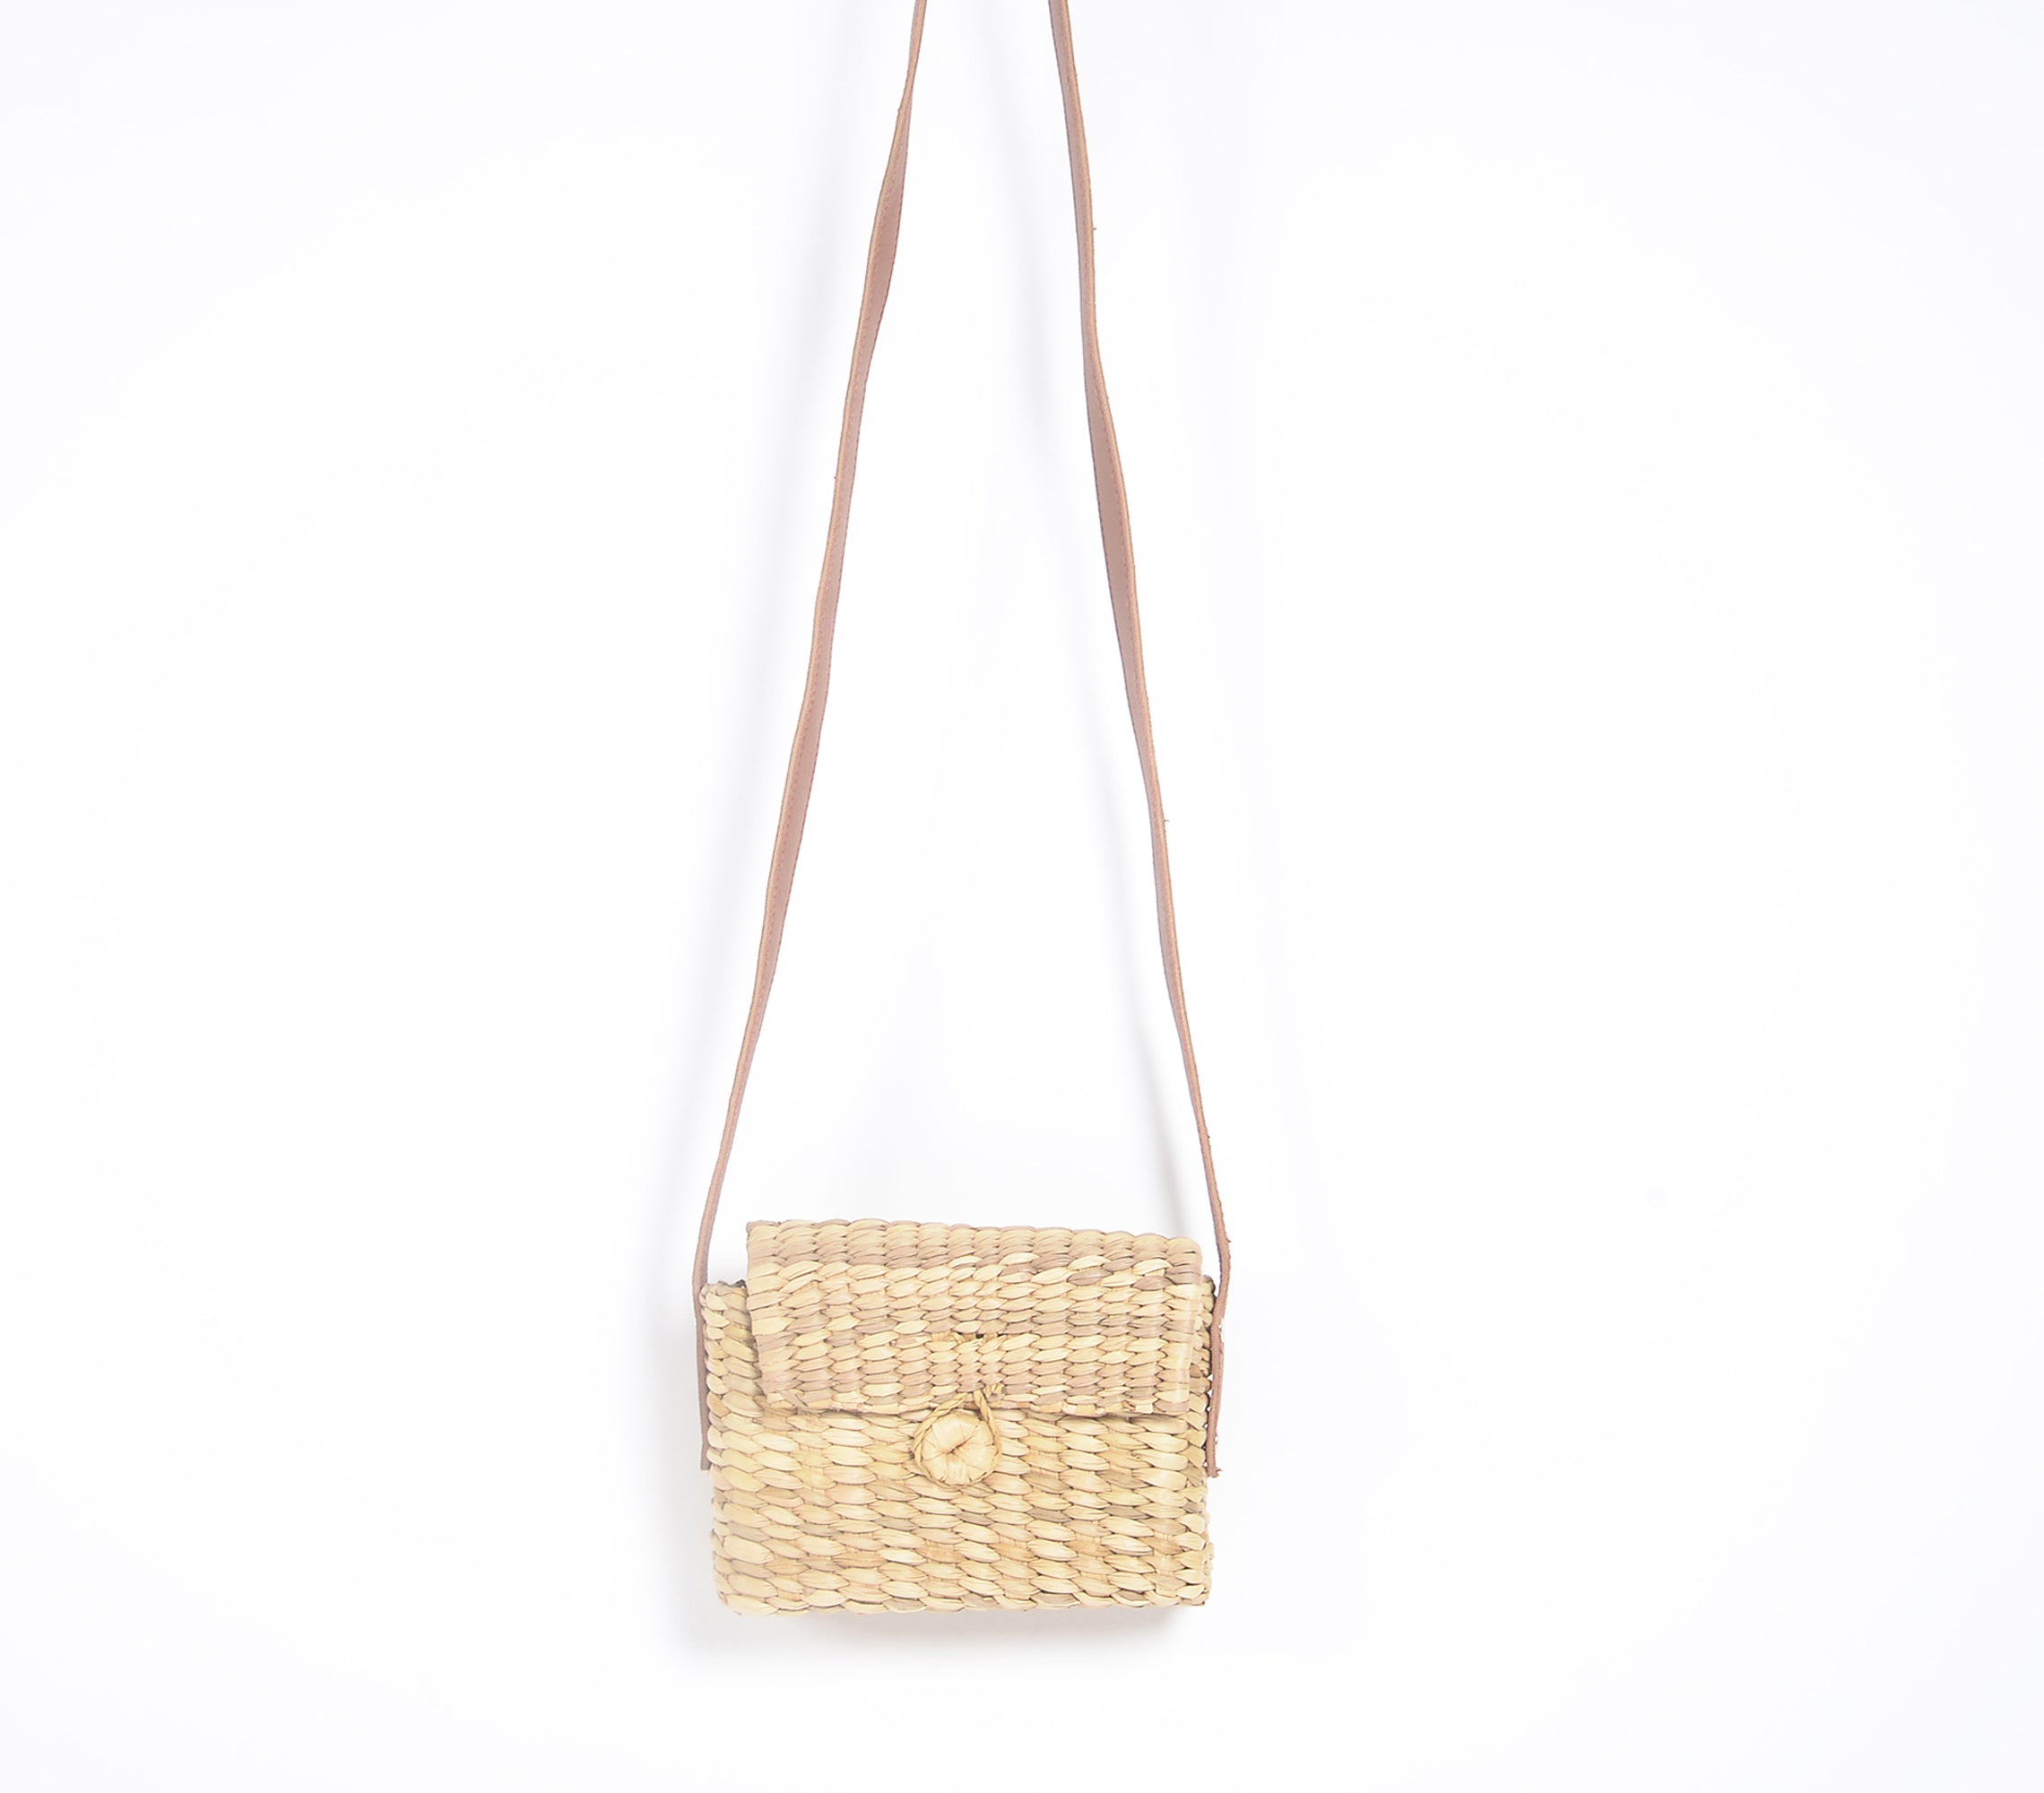 Handwoven kauna grass sling Bag, 7.5 x 2.5 x 6 Inch